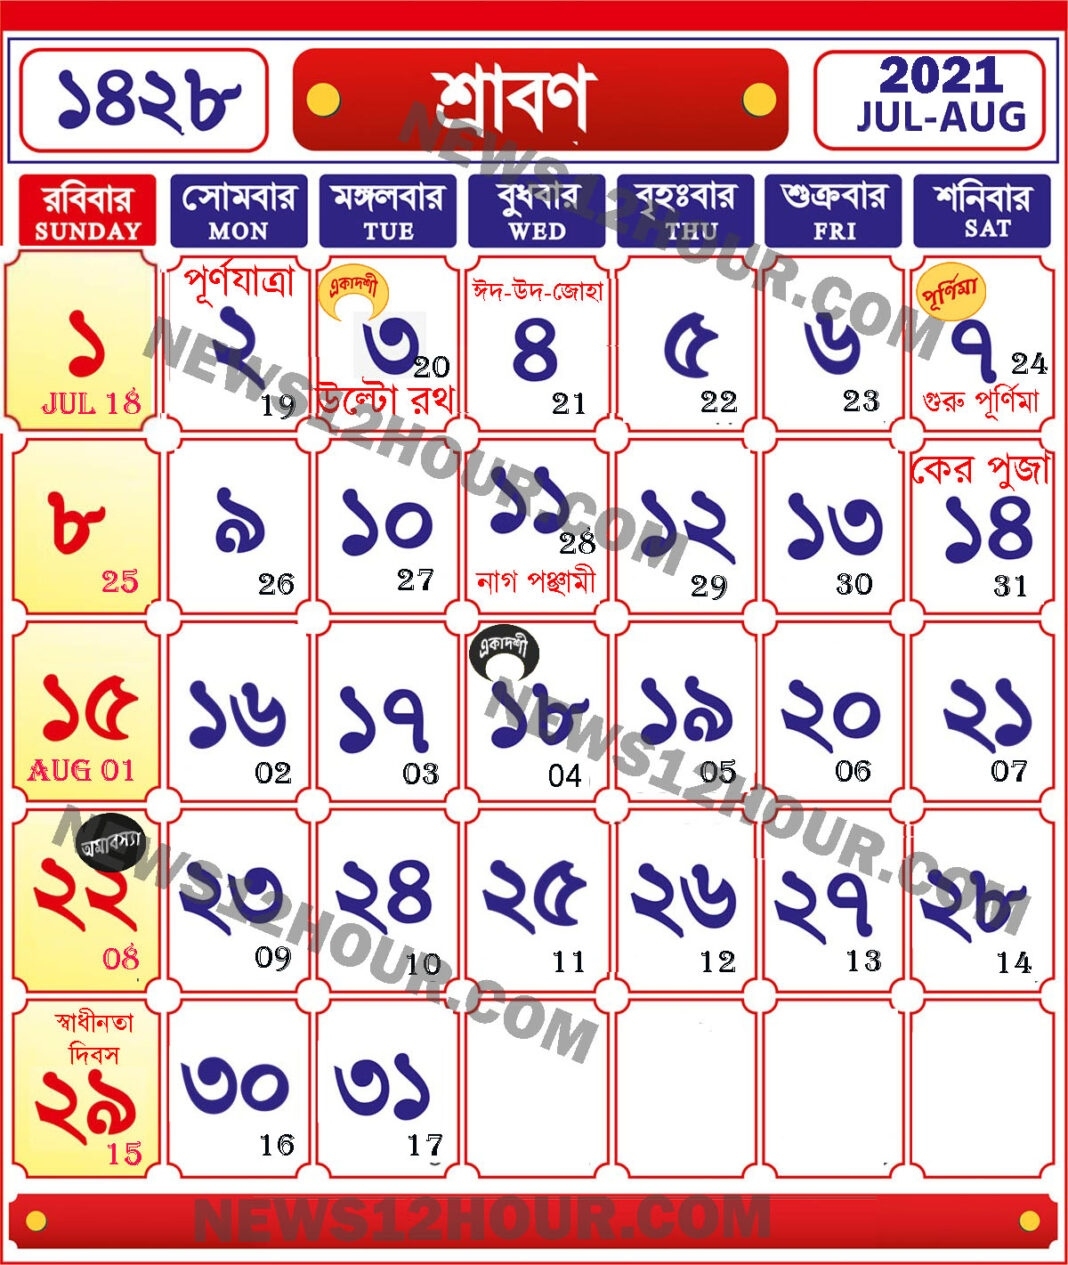 শ্রাবণ ১৪২৮ | Shraban 1428 | Bengla Calendar 2021 - News 12 Hour Bengali Calendar 2021 August